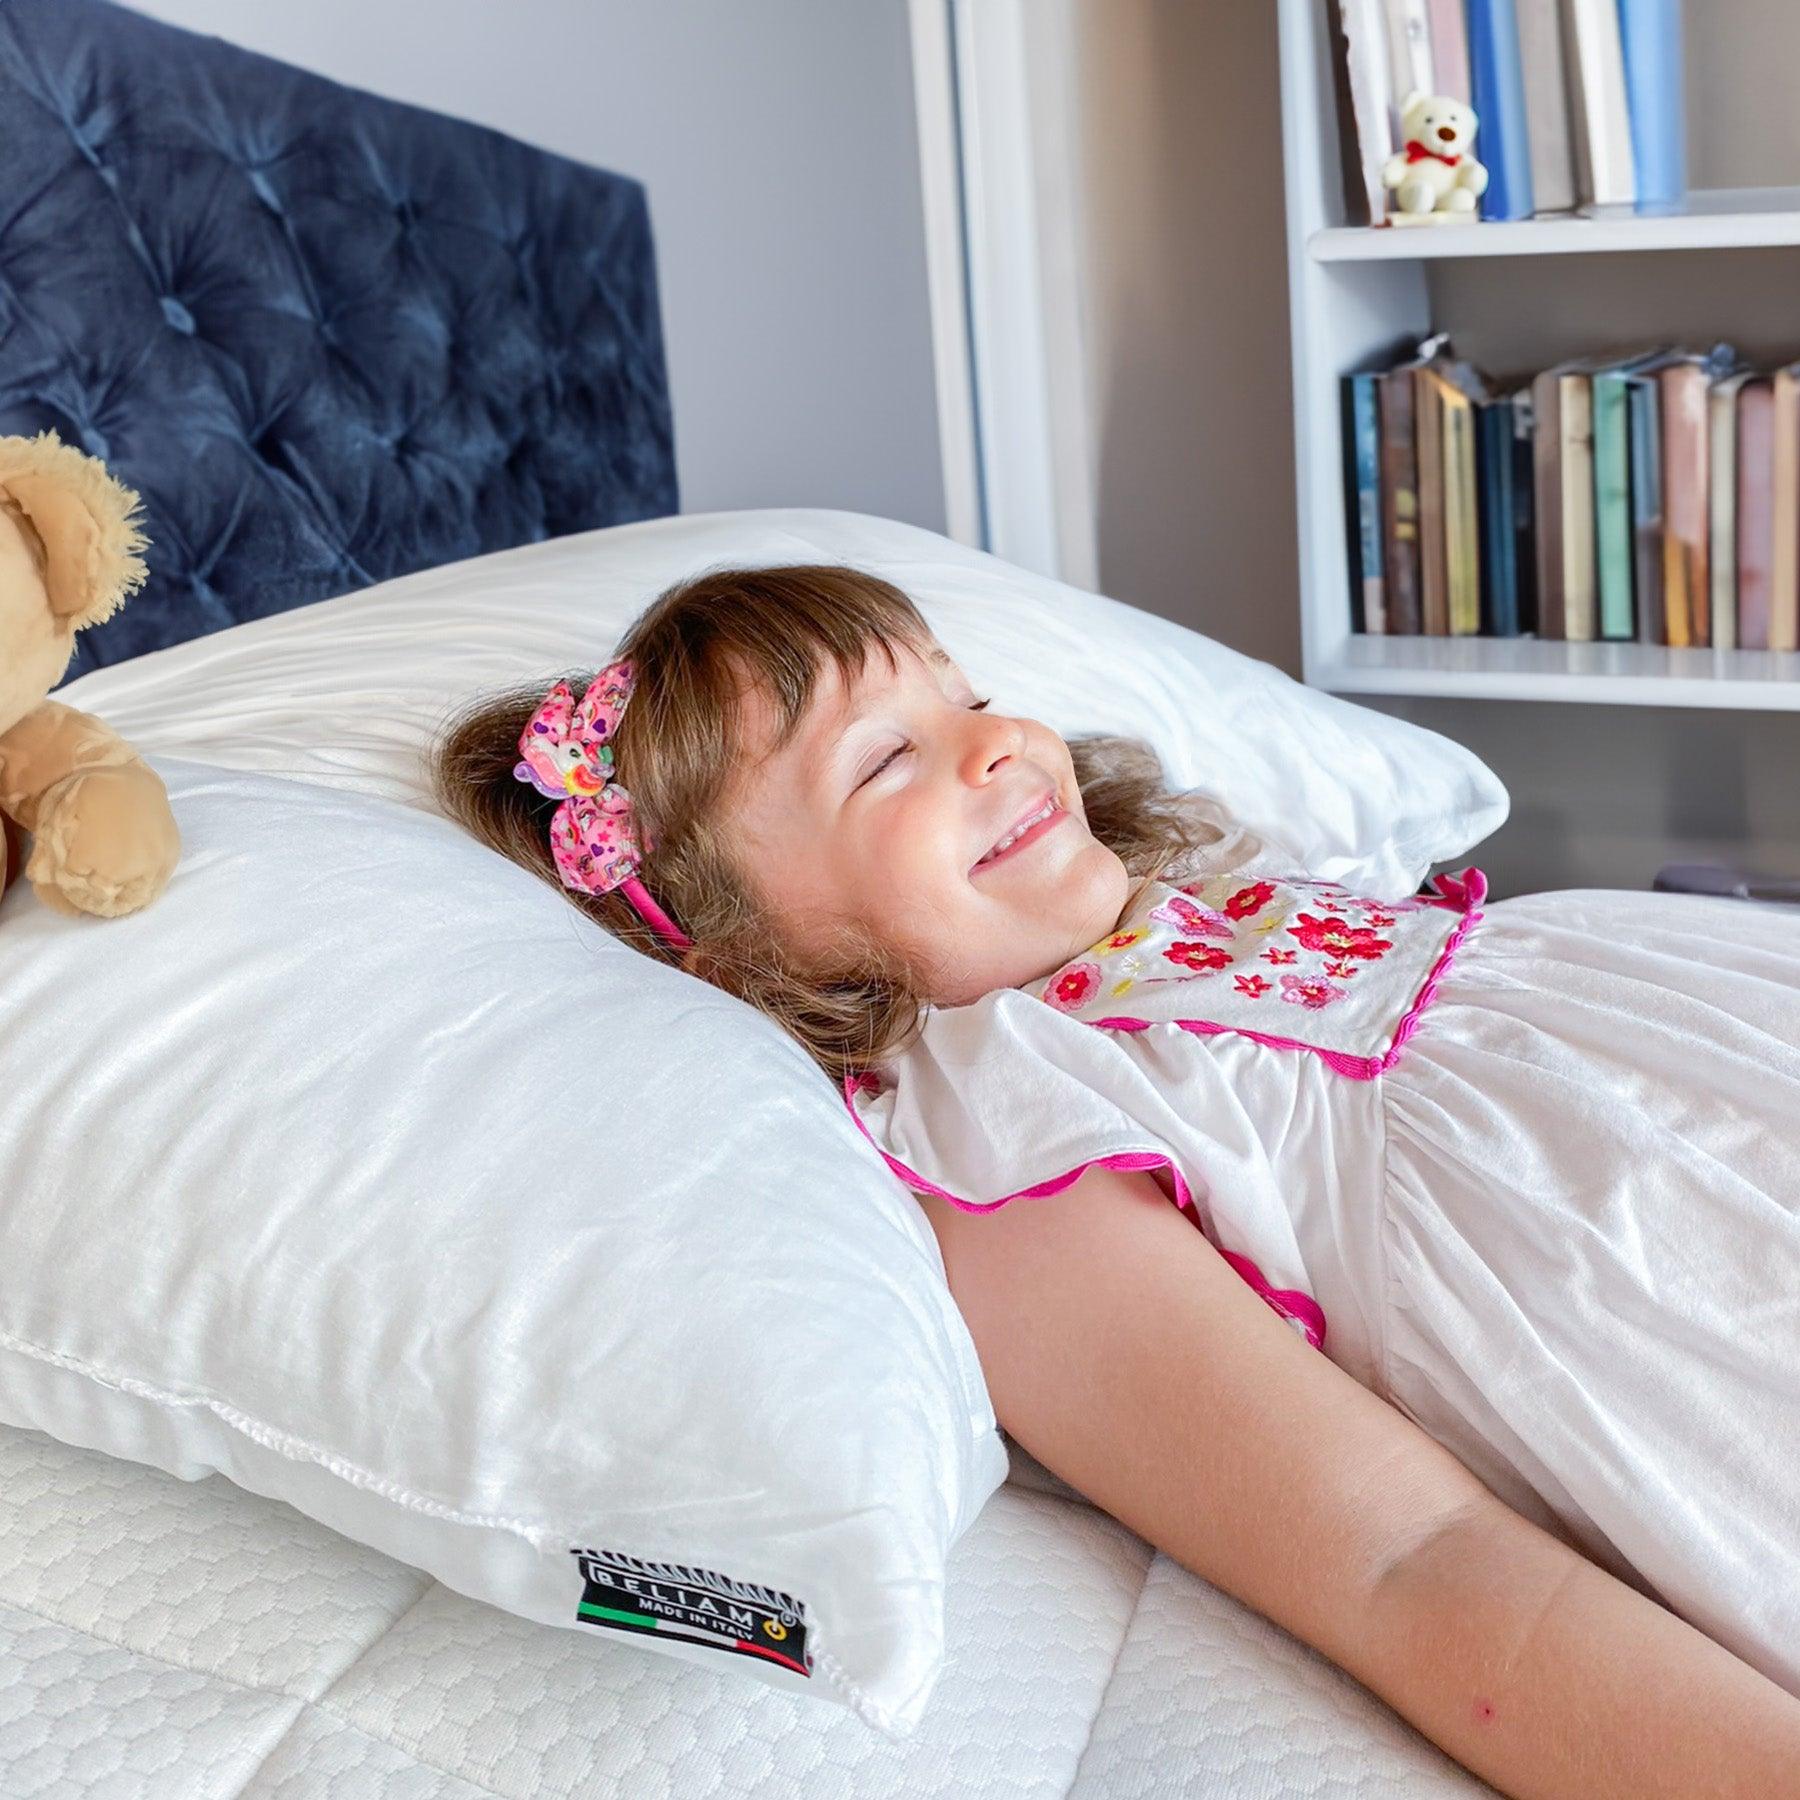 Cuscino PISOLO antisoffocamento in fibra per bambini - Comfort e sicurezza per il sonno del tuo bambino su Beliamo.com